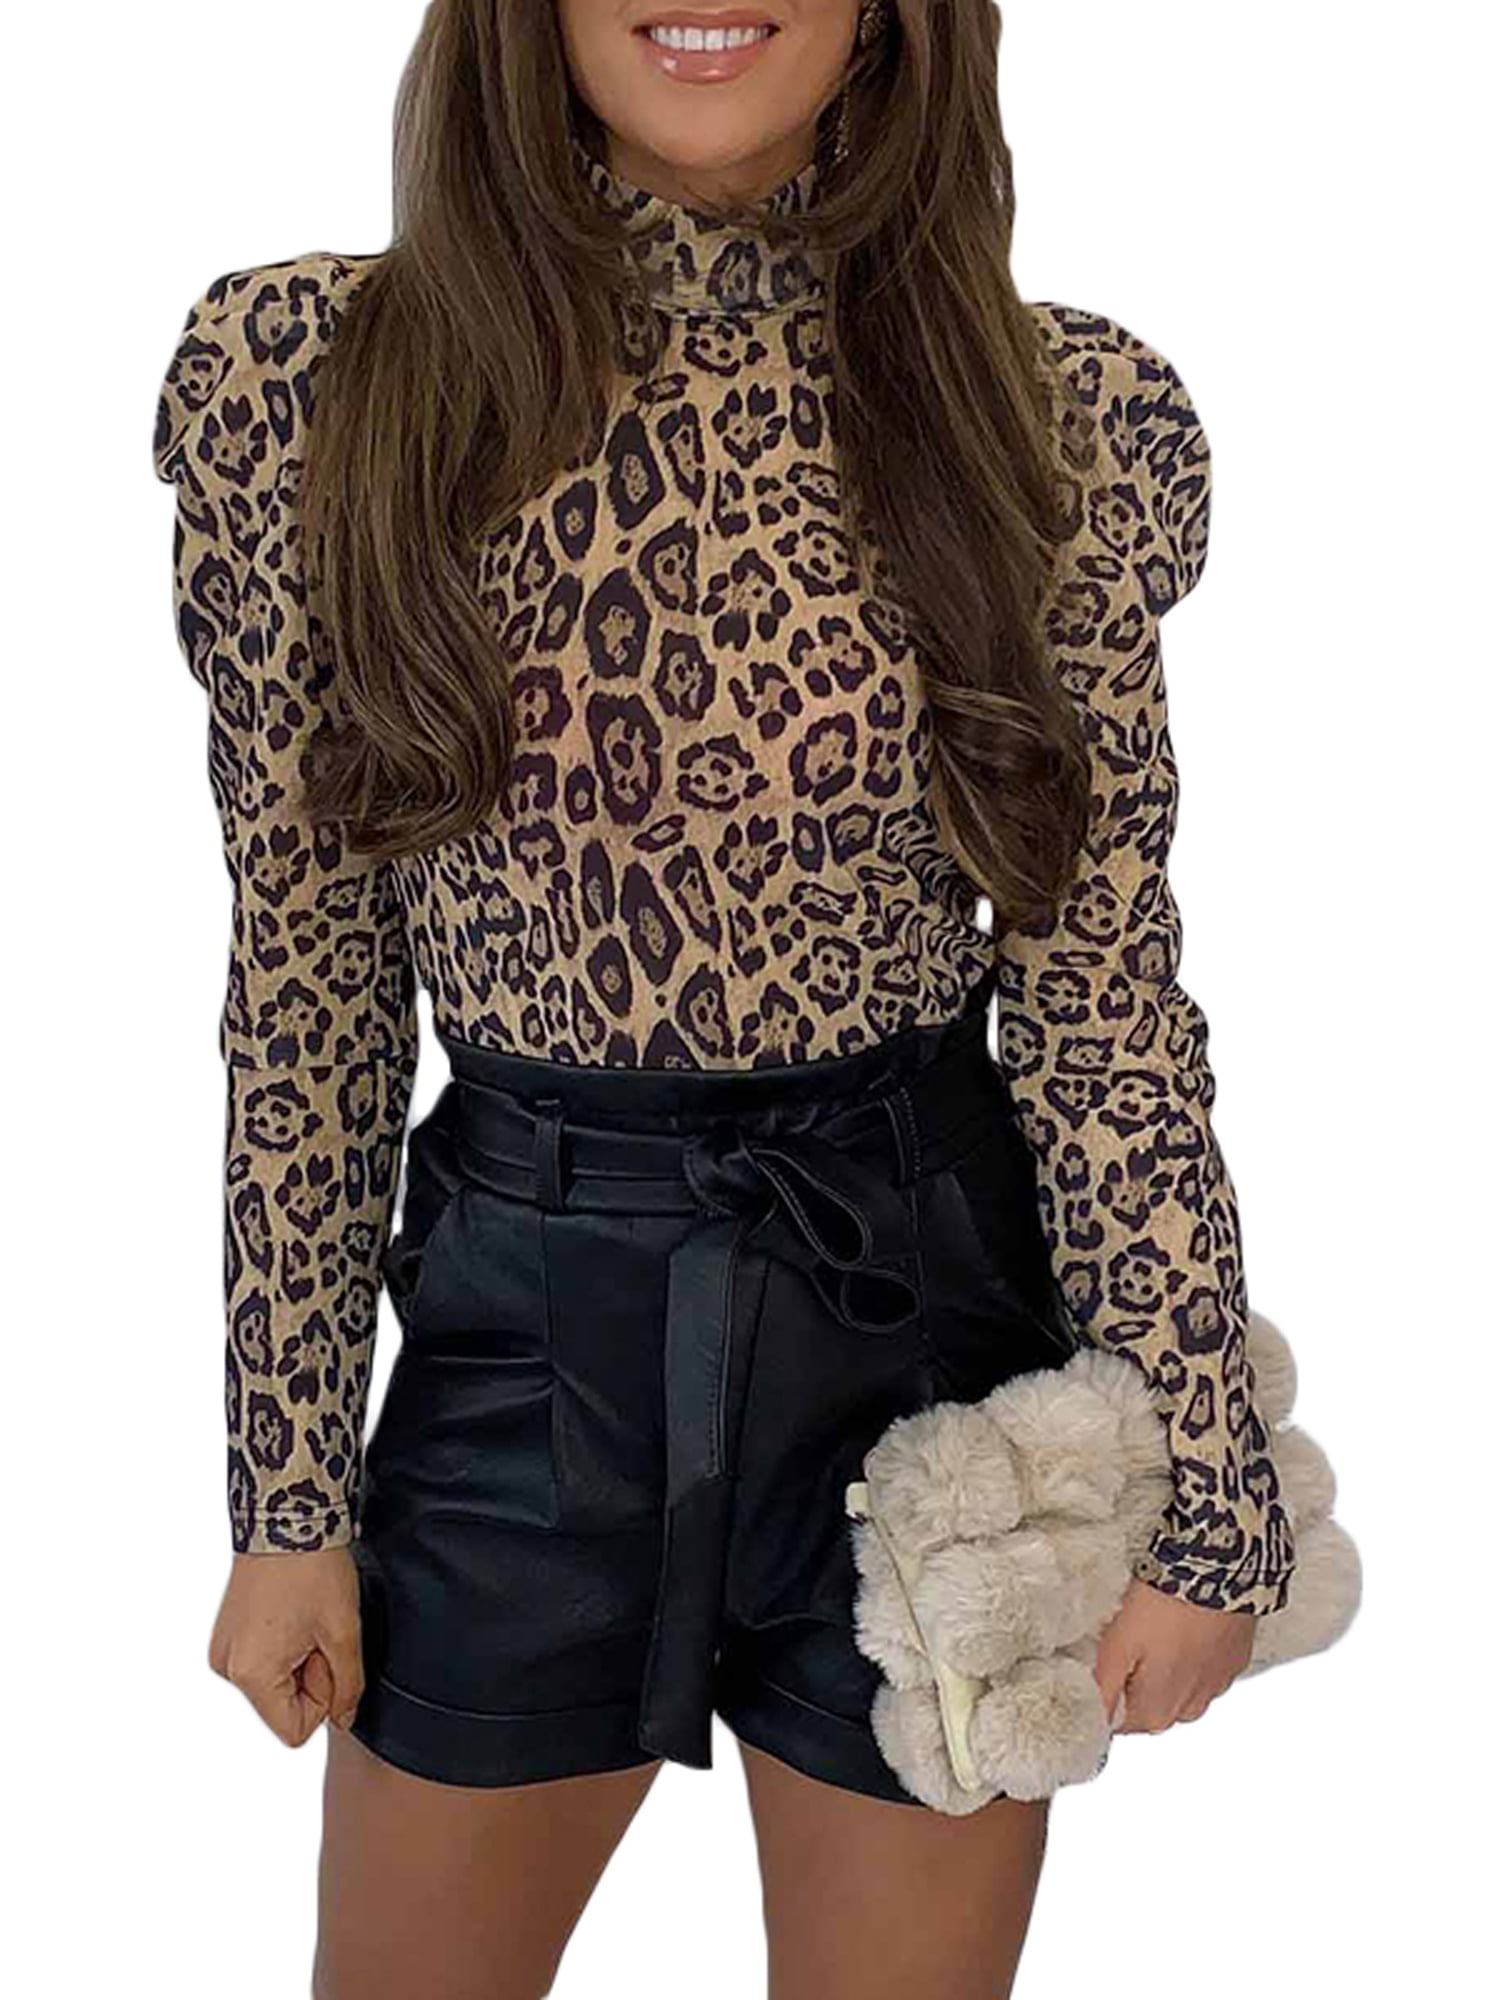 Lallc Women S Leopard Print High Neck T Shirt Long Sleeve Slim Fit Blouse Work Tops Walmart